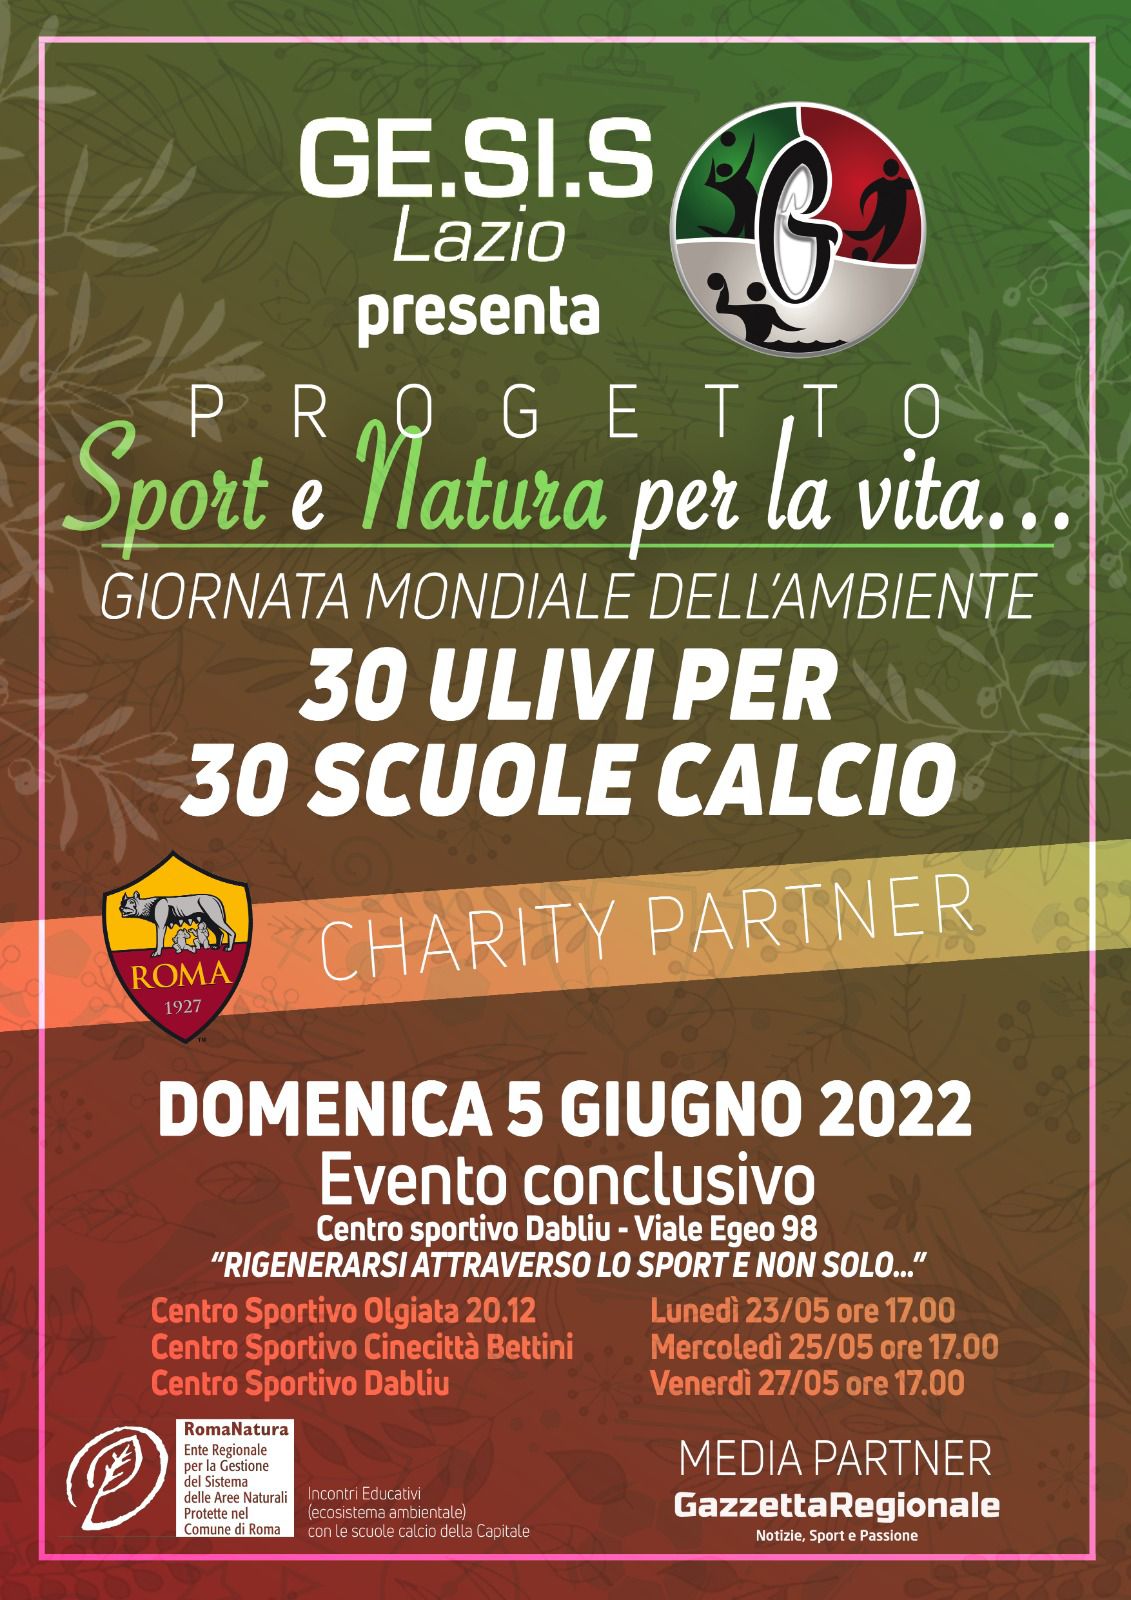 Olimpus 4U e Progetto Sport e Natura di GE.SI.S. Lazio